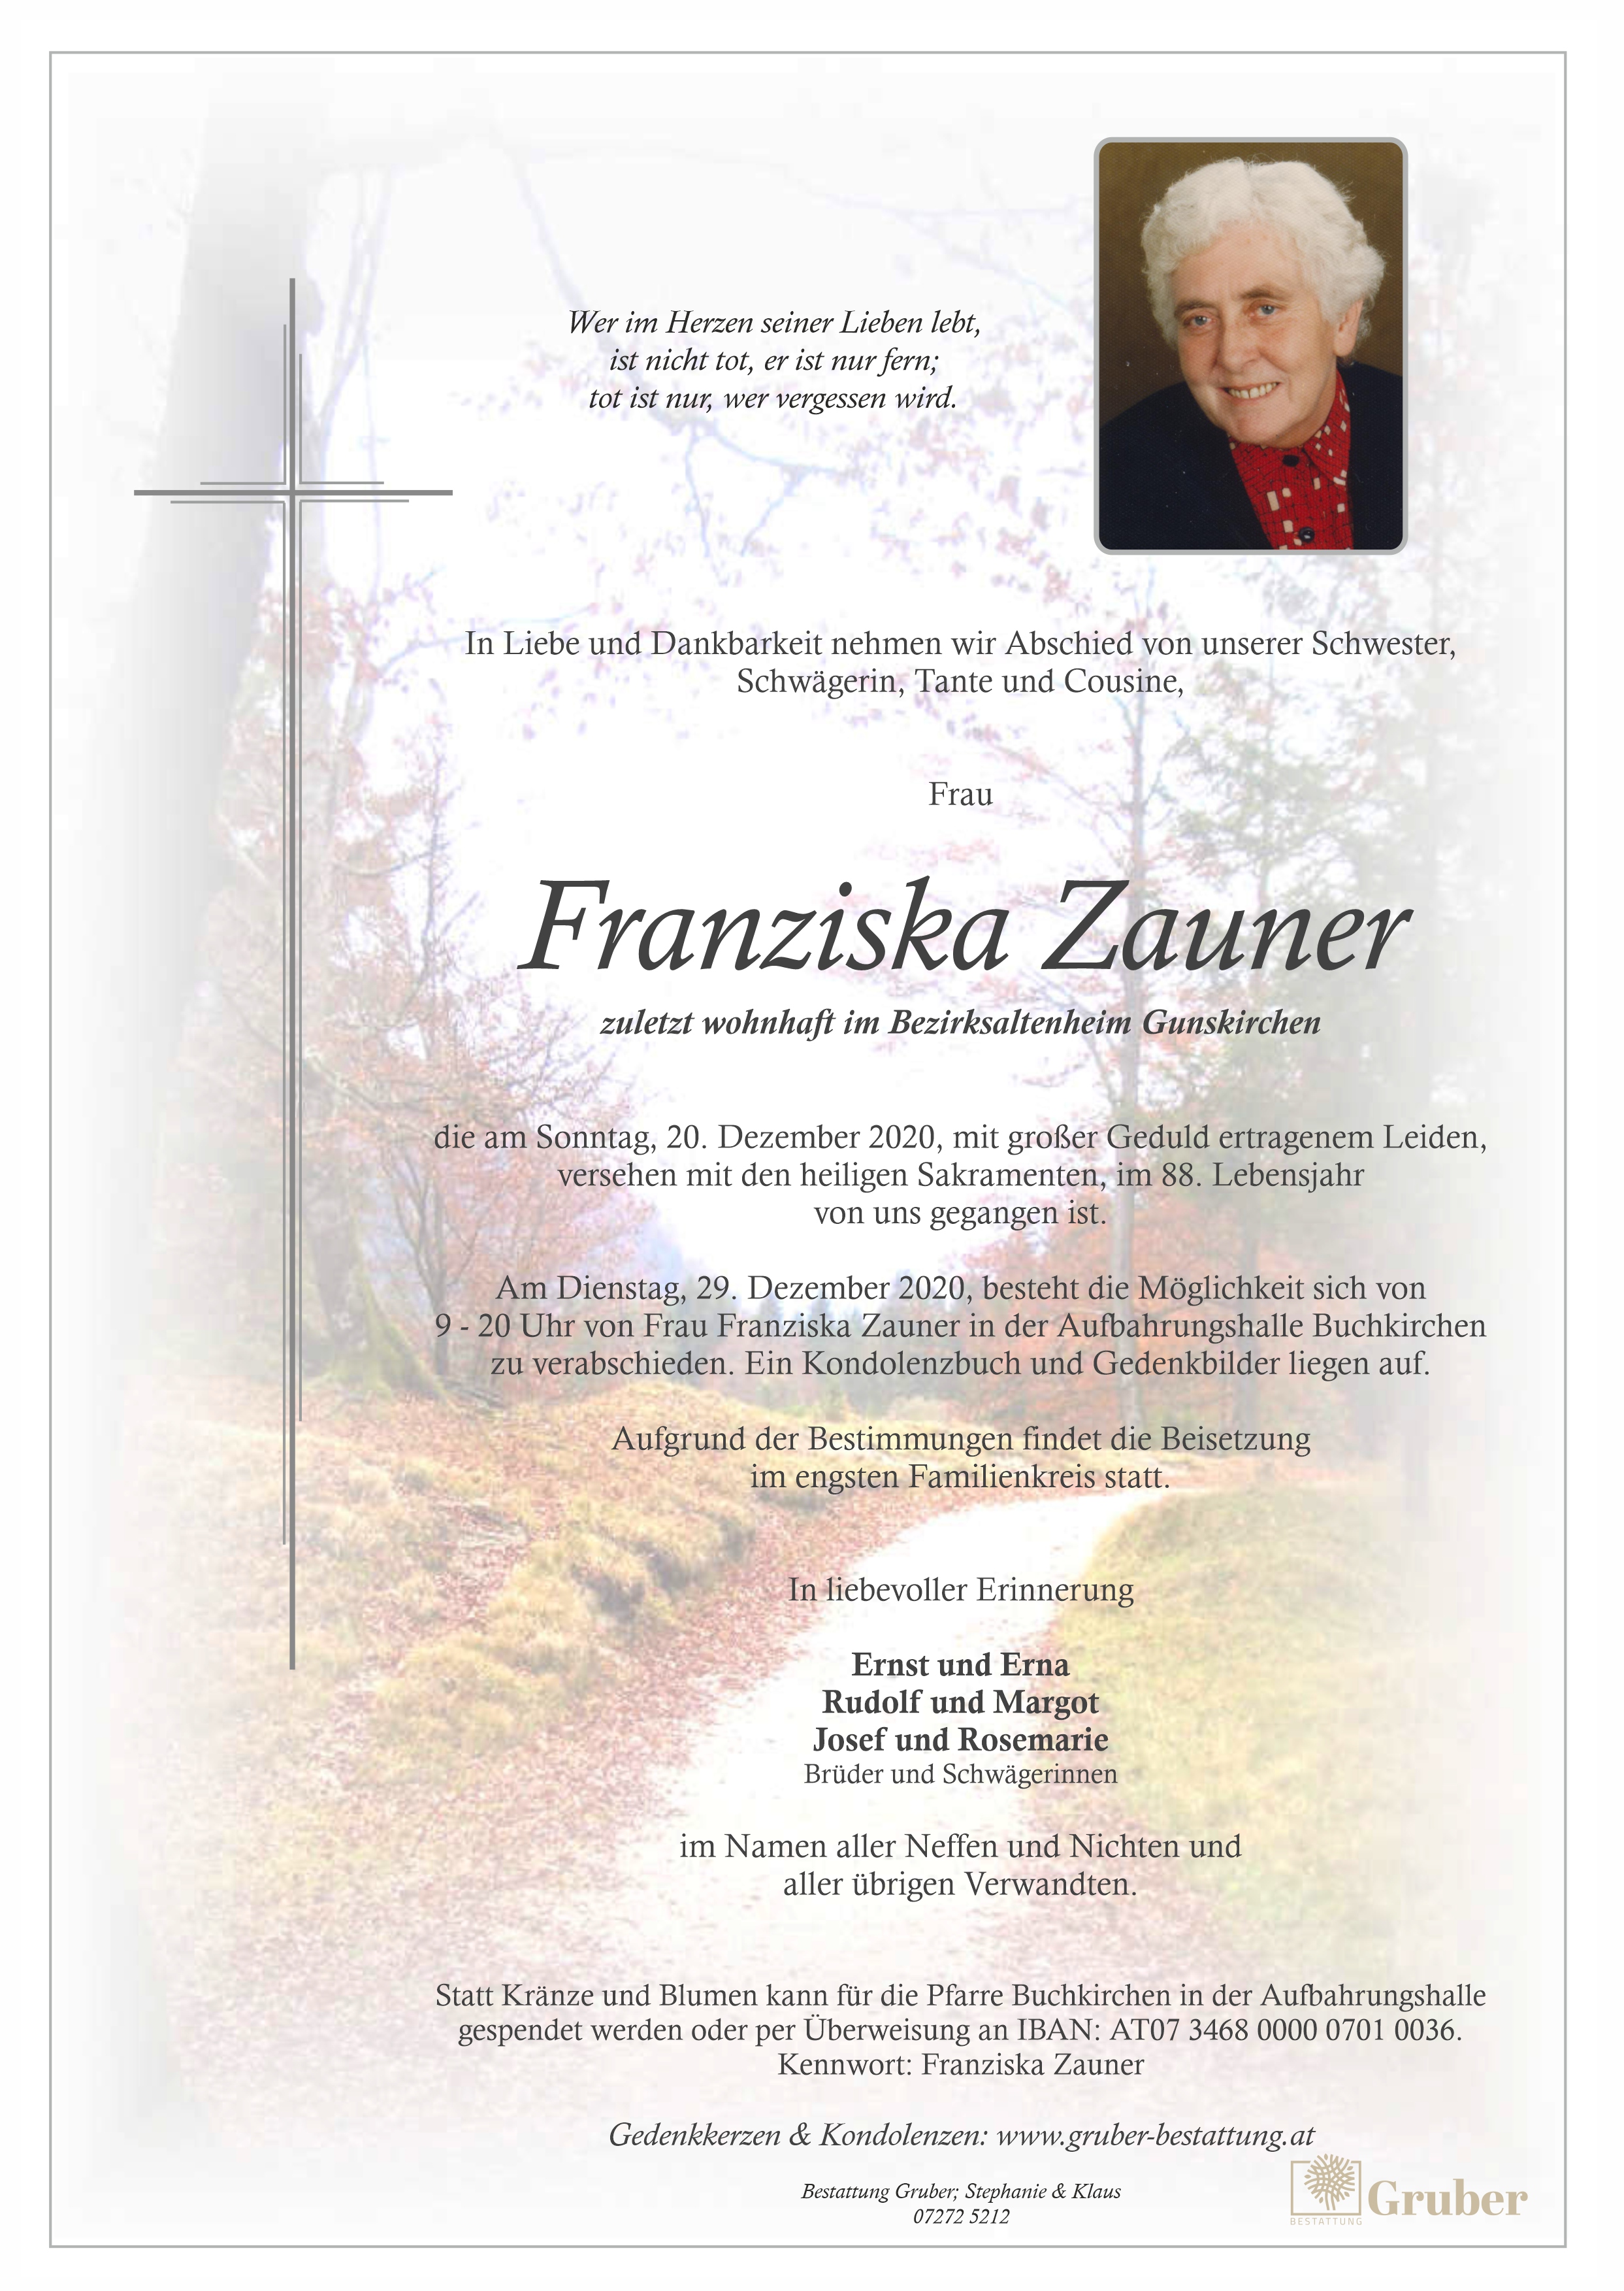 Franziska Zauner (Buchkirchen)